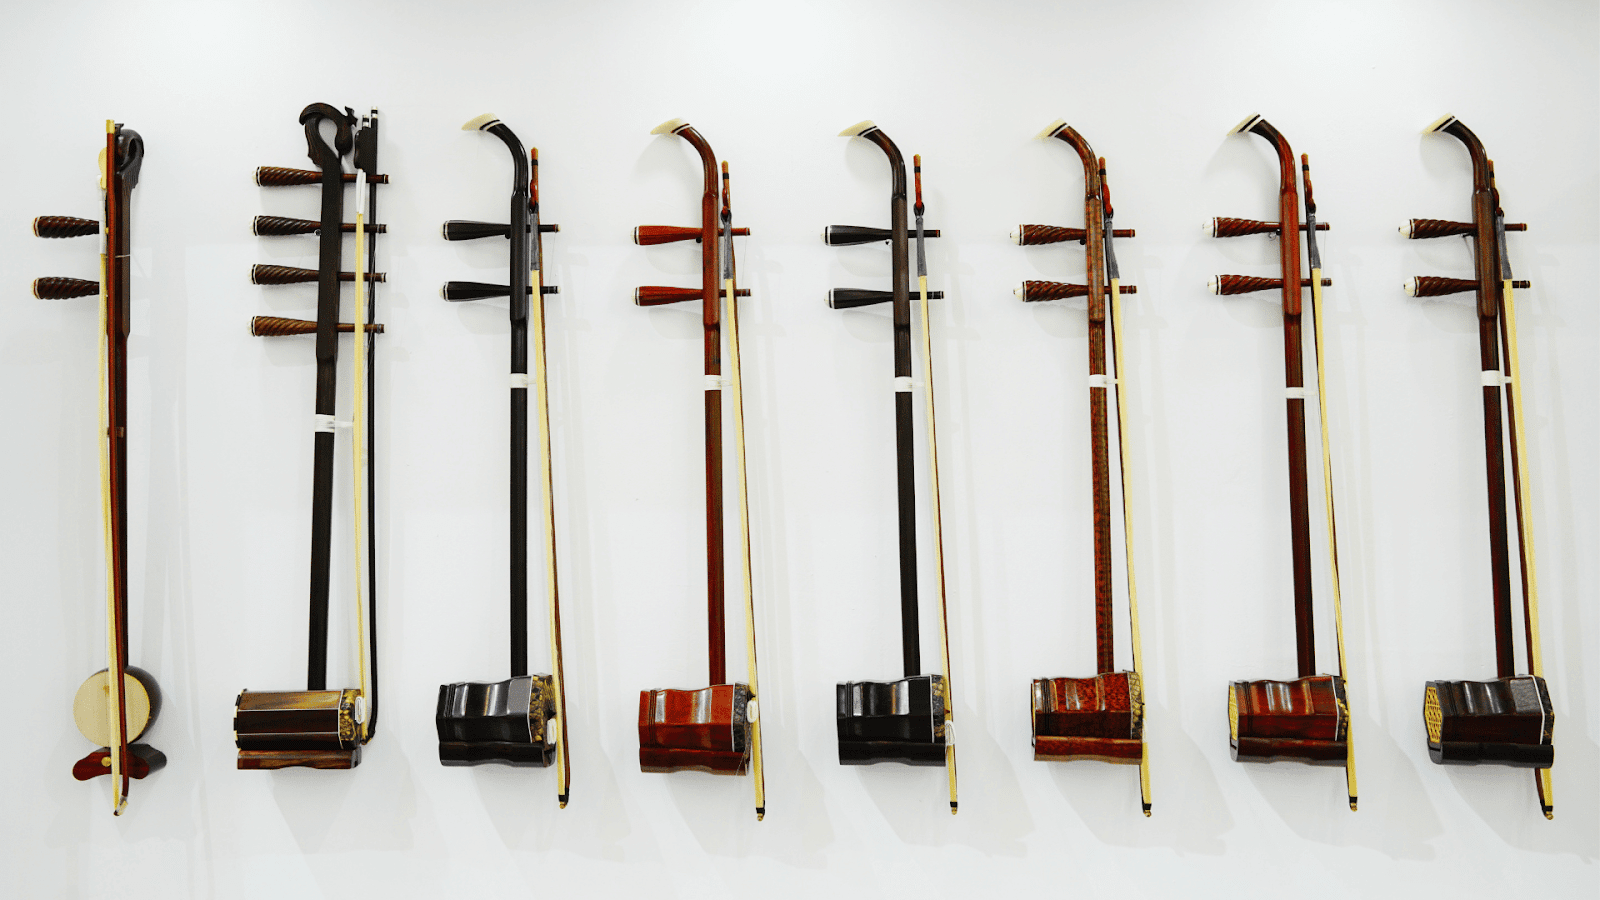 Erhu unique instrument